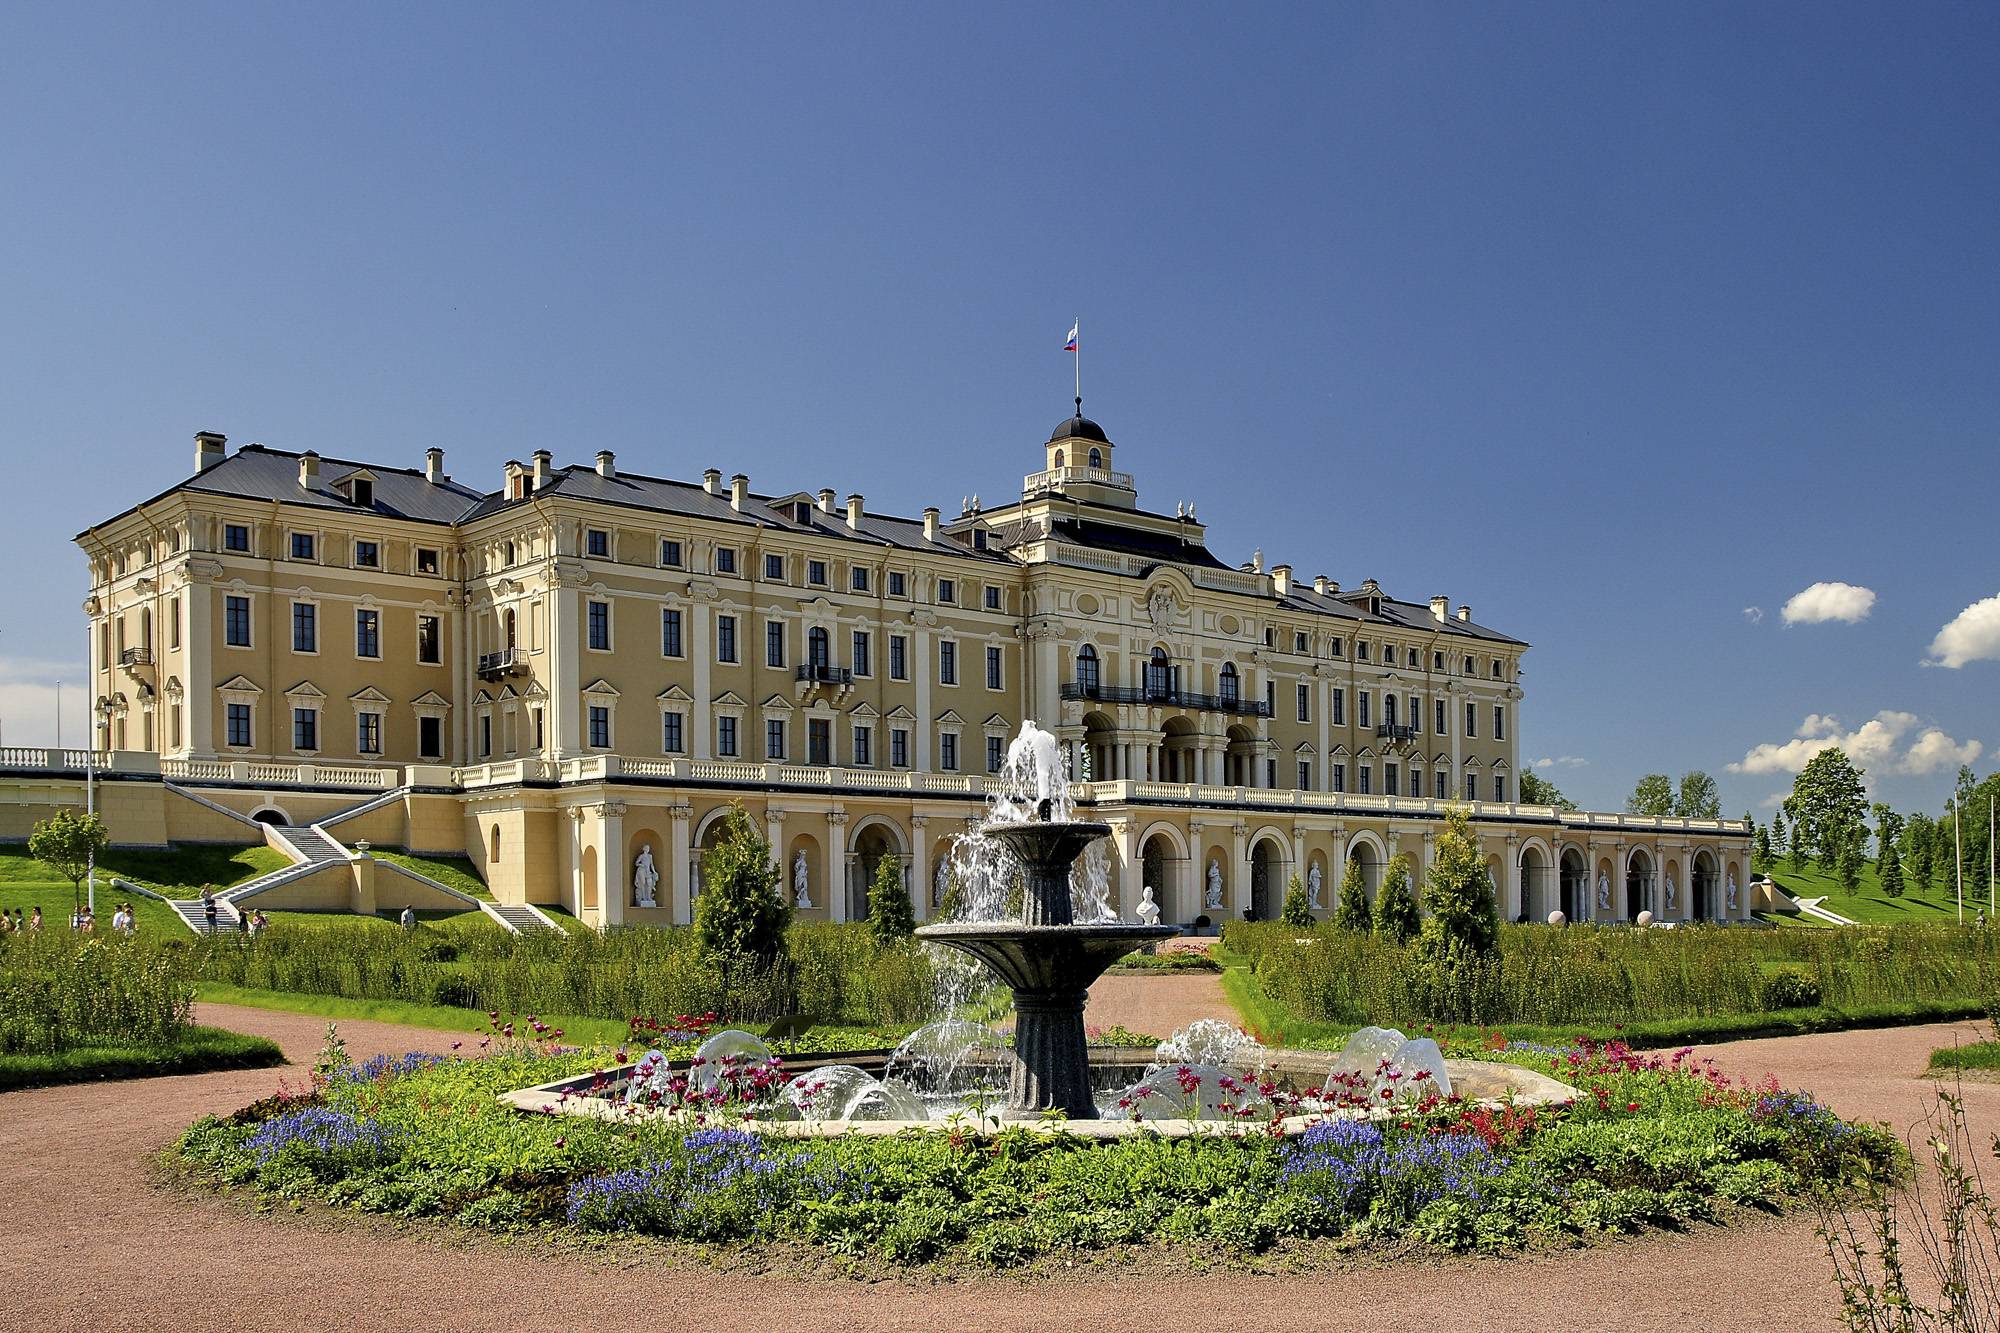 Как добраться в стрельну, посмотреть константиновский дворец и парк из санкт-петербурга - 4 варианта